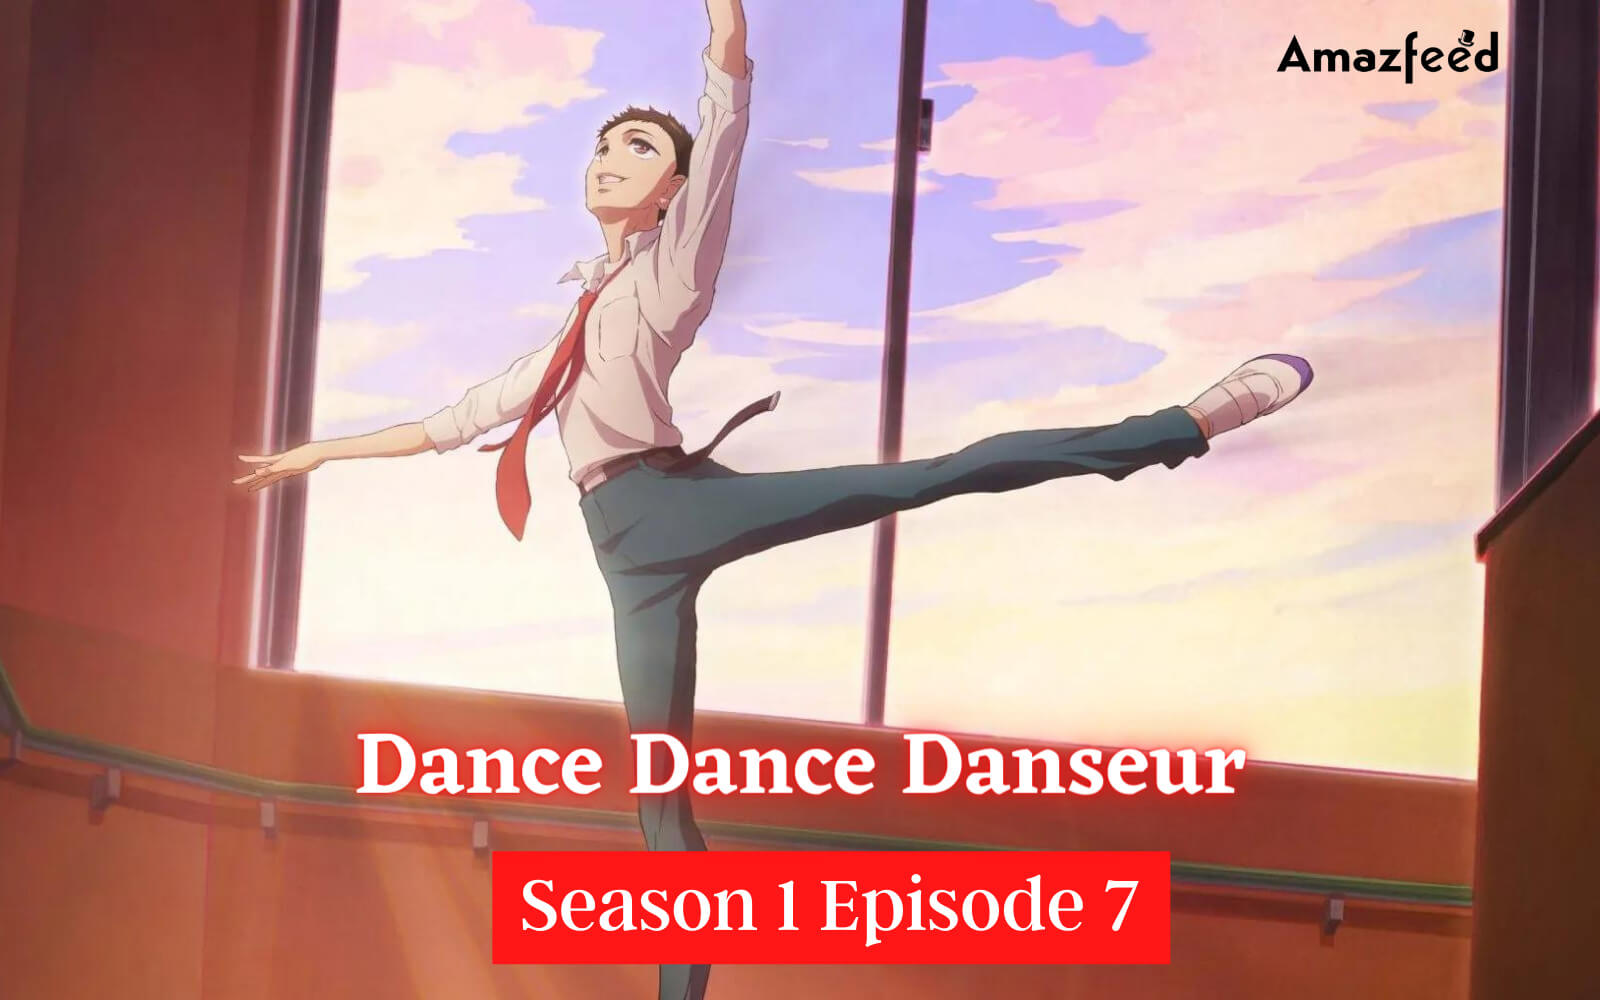 Dance Dance Danseur Season 1 Episode 7 Release date